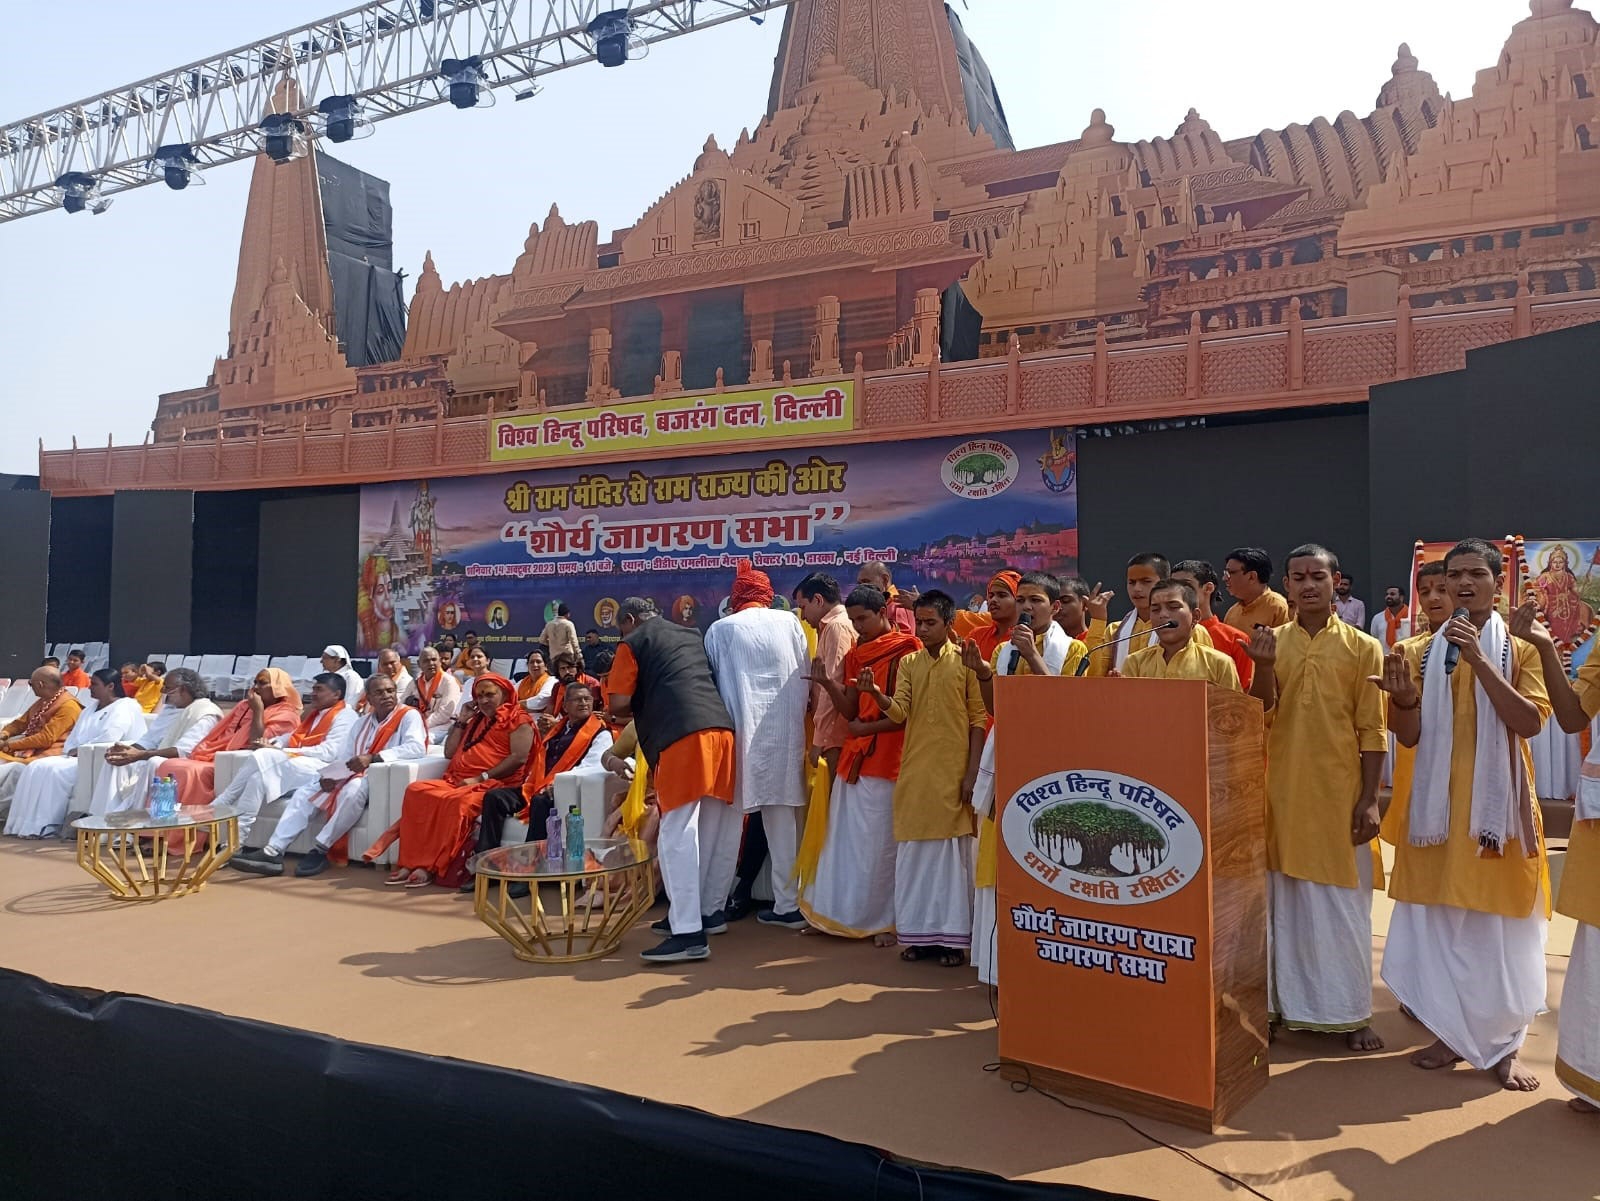 विश्व हिंदू परिषद दिल्ली प्रांत के सभी जिलों और प्रखंडों में निकाले गए शौर्य जागरण यात्रा के समापन समारोह के अवसर 